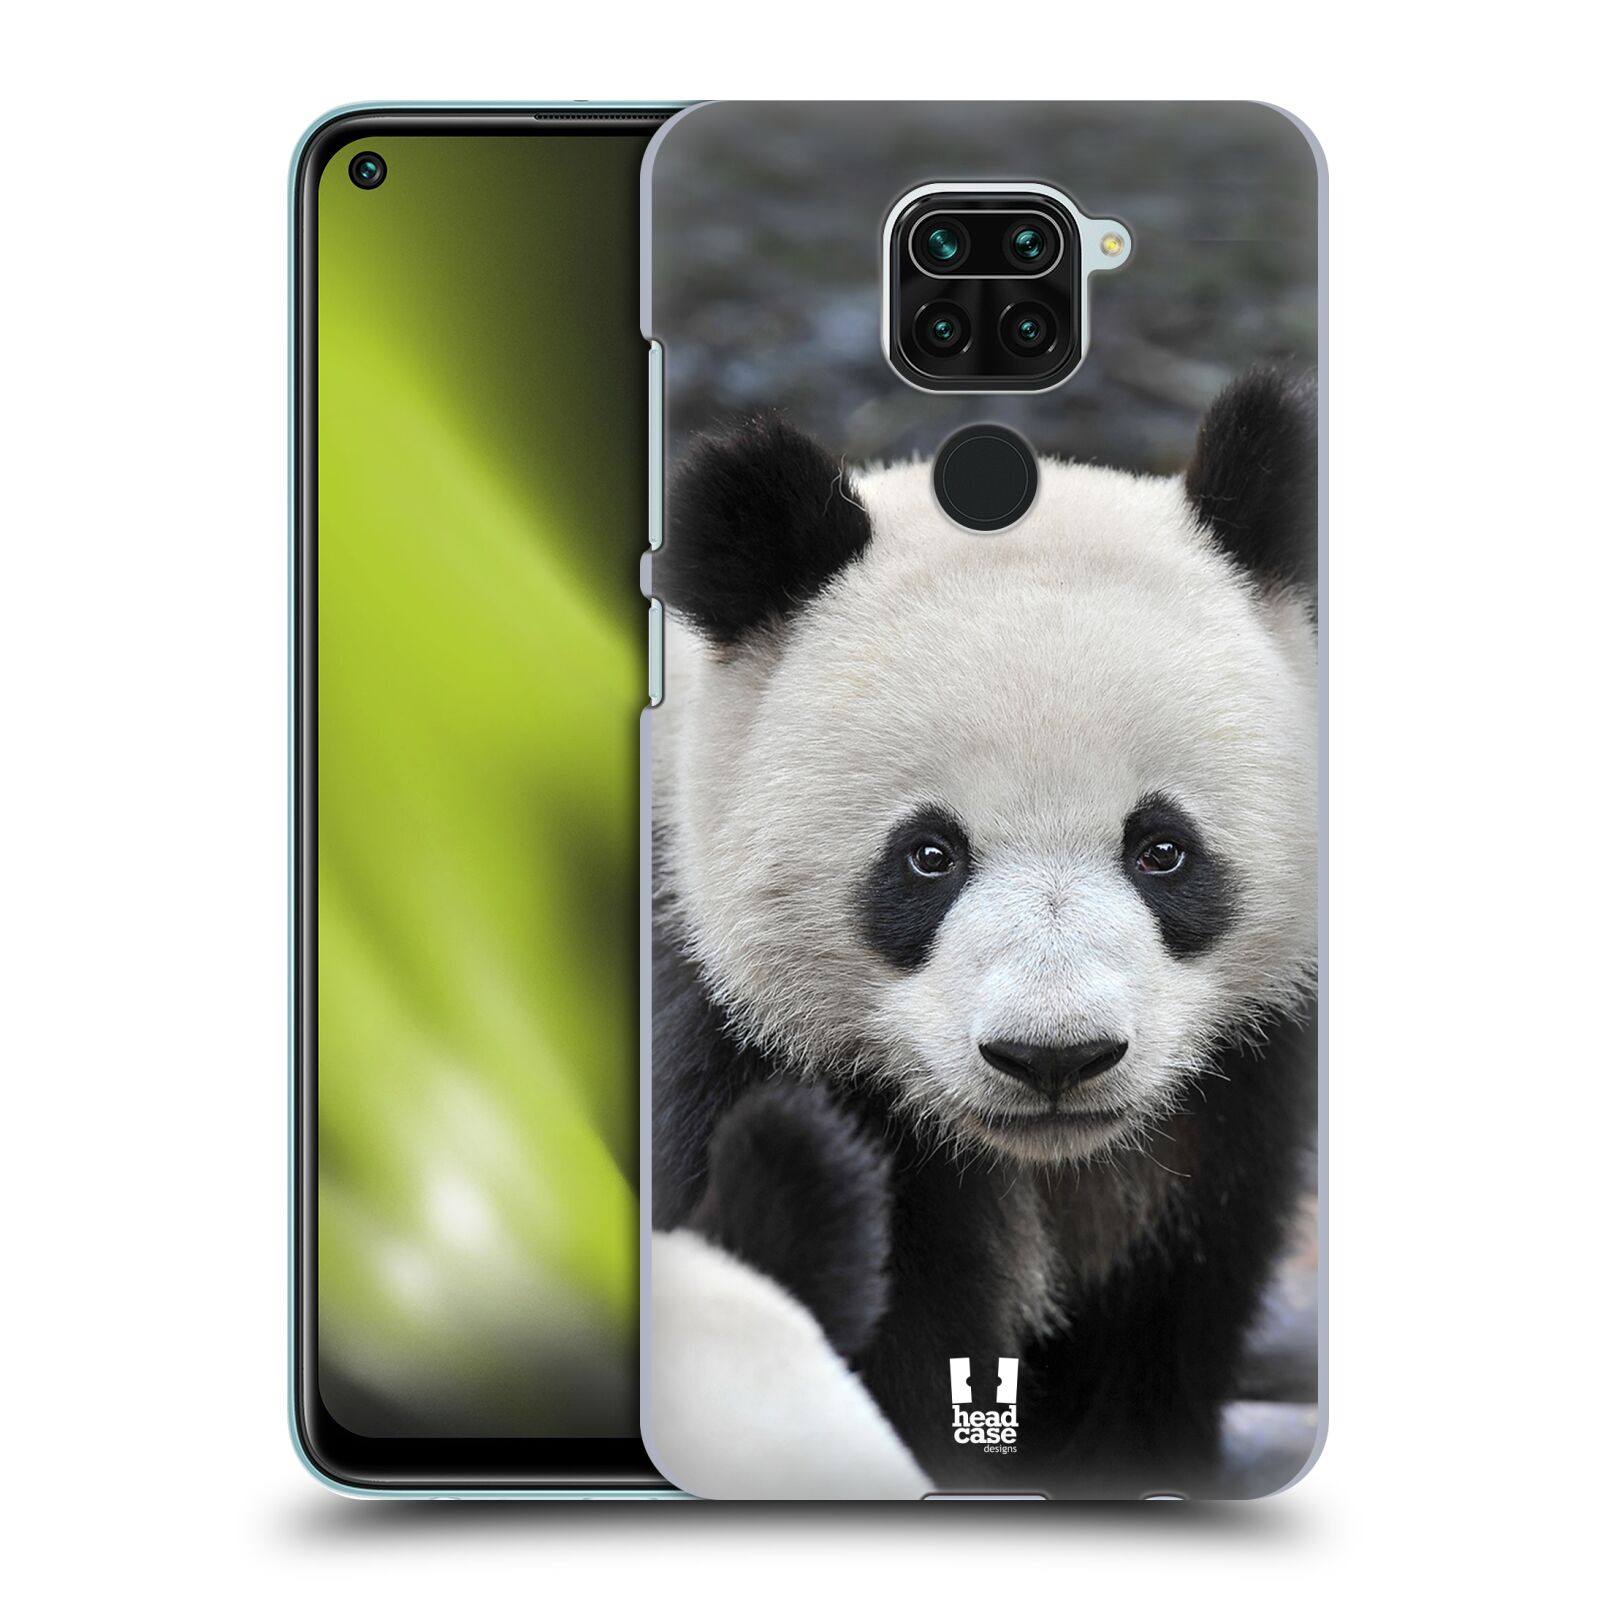 Zadní obal pro mobil Xiaomi Redmi Note 9 - HEAD CASE - Svět zvířat medvěd panda